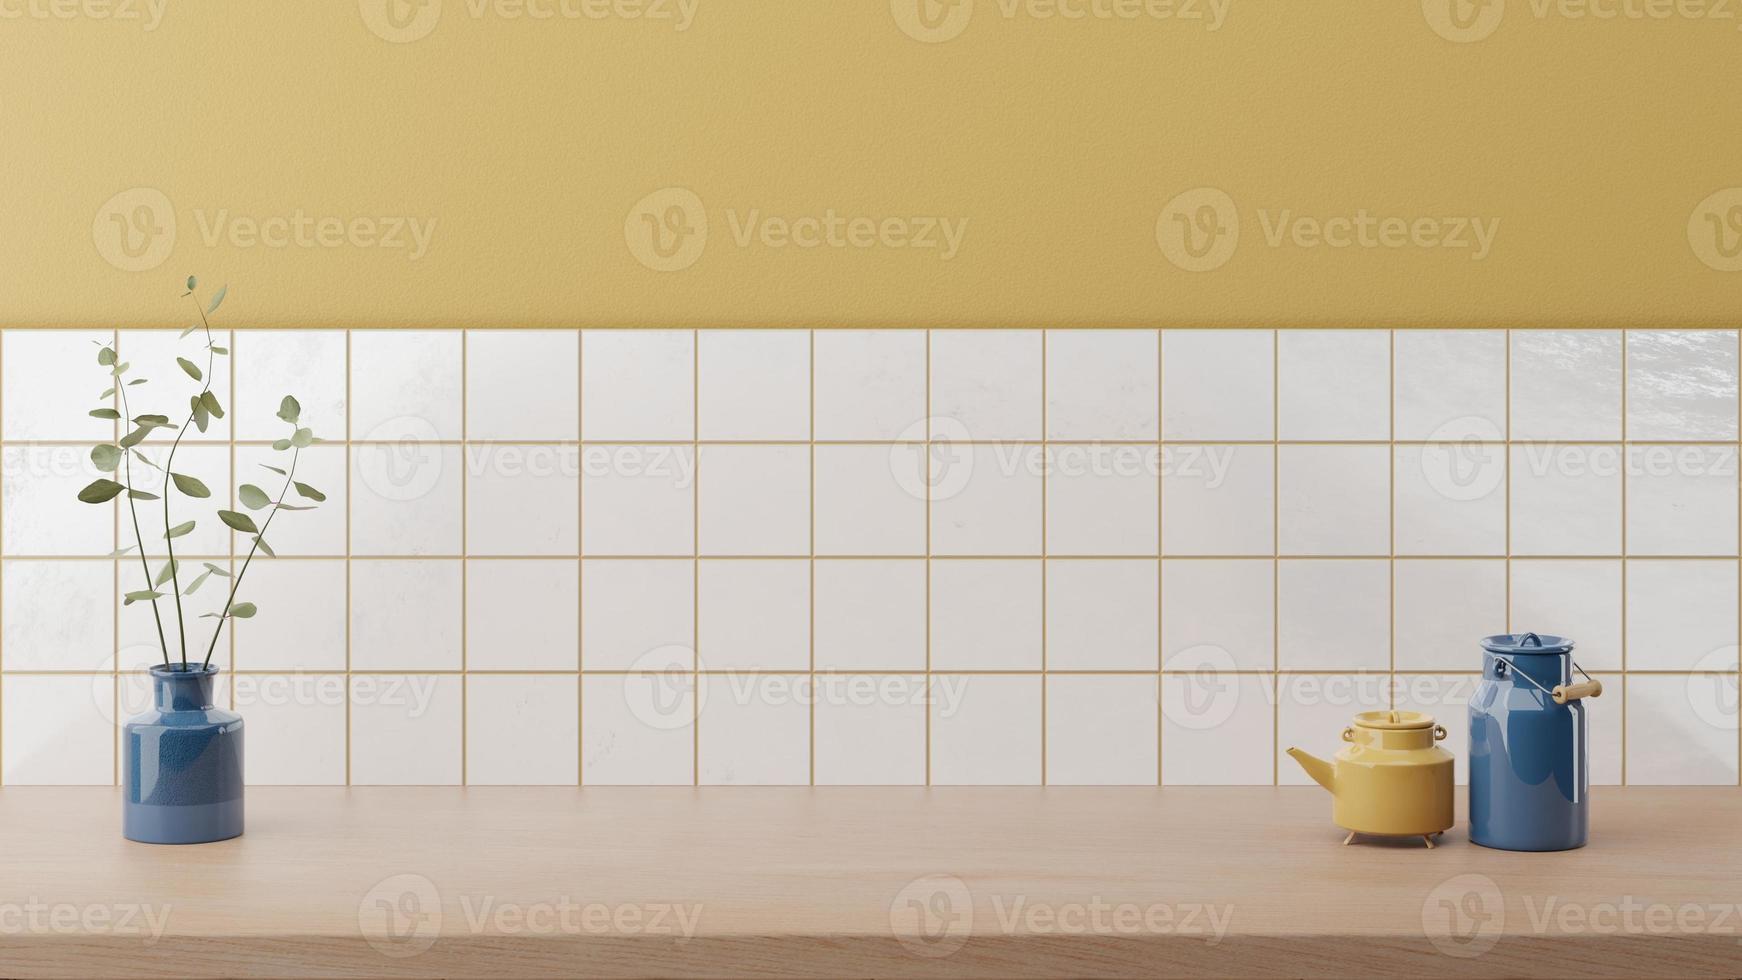 sfondo mockup contatore minimo in stile giapponese con bancone in legno luminoso e parete gialla piastrellata bianca. interno della cucina. foto